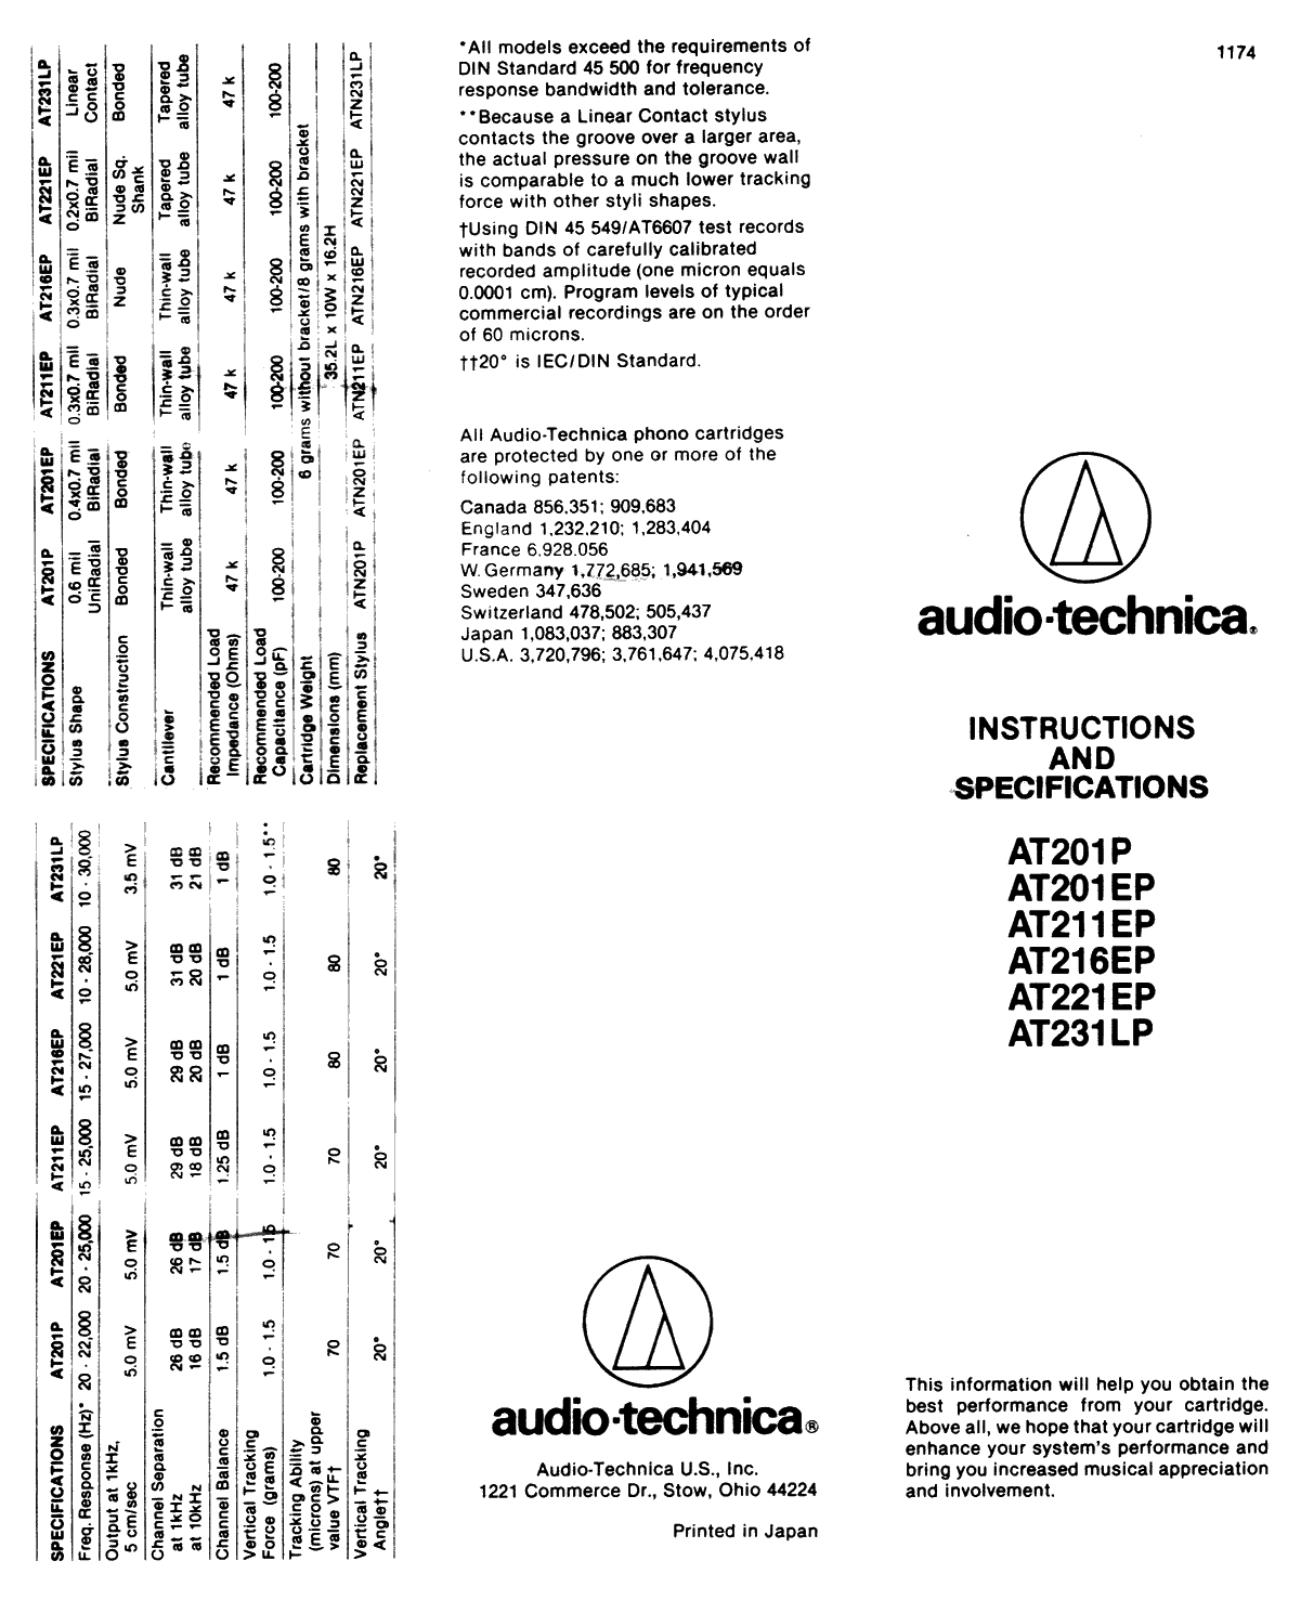 Audio Technica AT-201-EP, AT-201-P, AT-211-EP, AT-216-EP, AT-221-EP Brochure